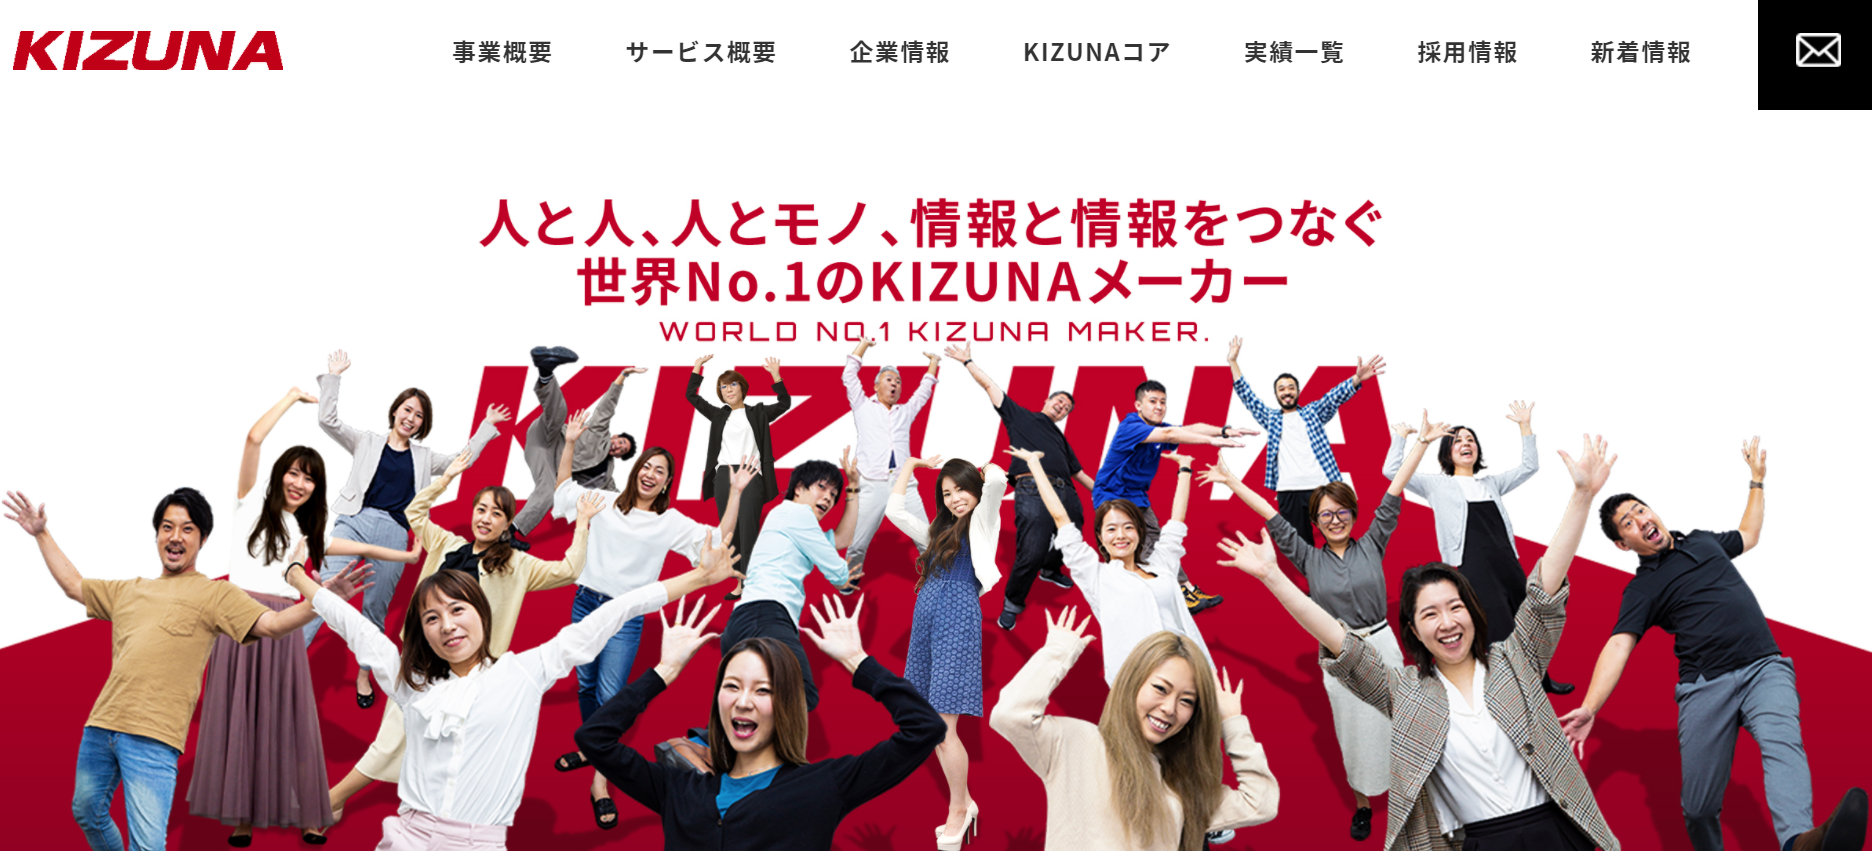 株式会社KIZUNAの株式会社KIZUNAサービス